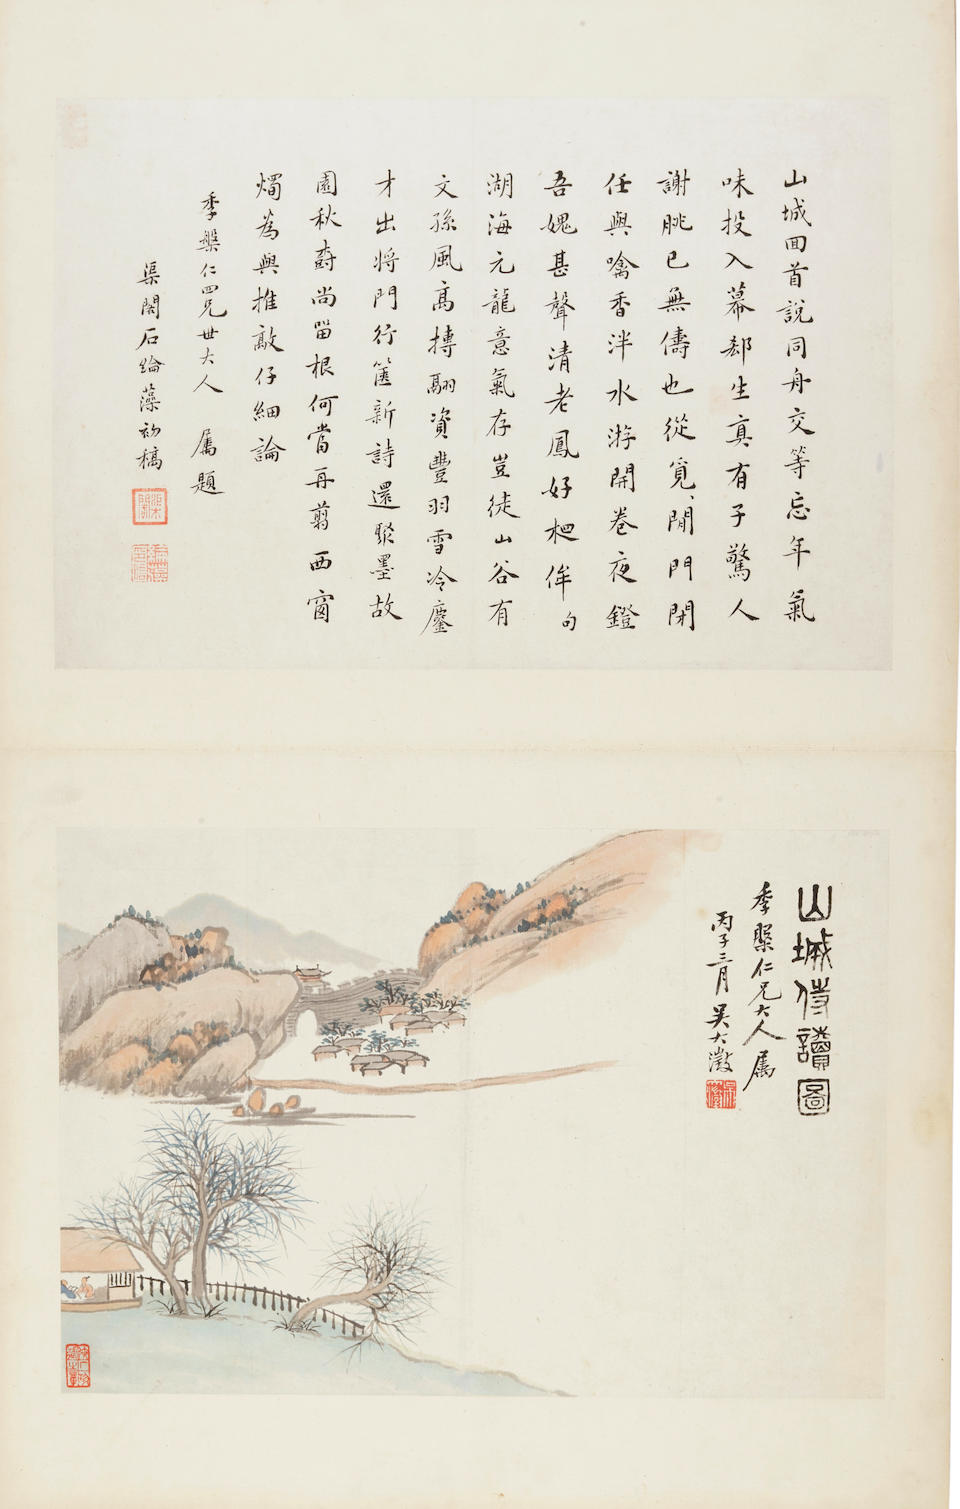 Zhang Xiong (1803-1886), Xu gu (1823-1896), Wu Dacheng (1835-1902), Yang Borun (1837-1911), Wu Guxiang (1848-1903) et al. Studying with Father at the Mountain City Wall, 1875-1876  (20)